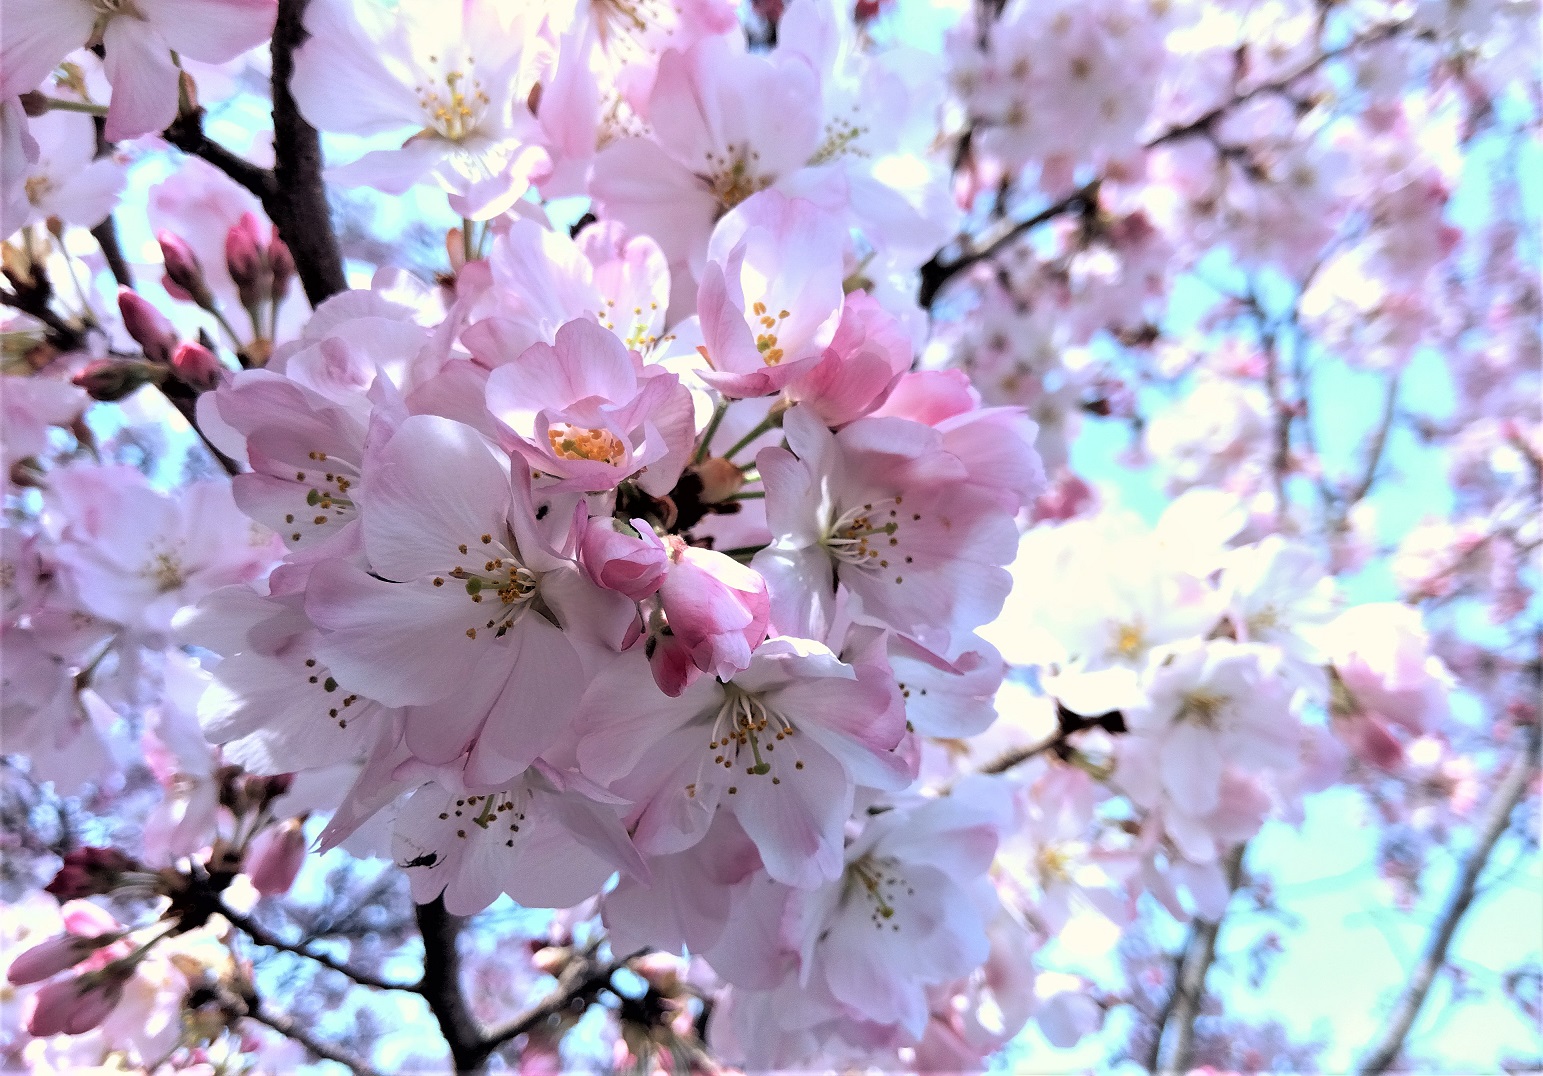 ソメイヨシノも咲き始めましたね。